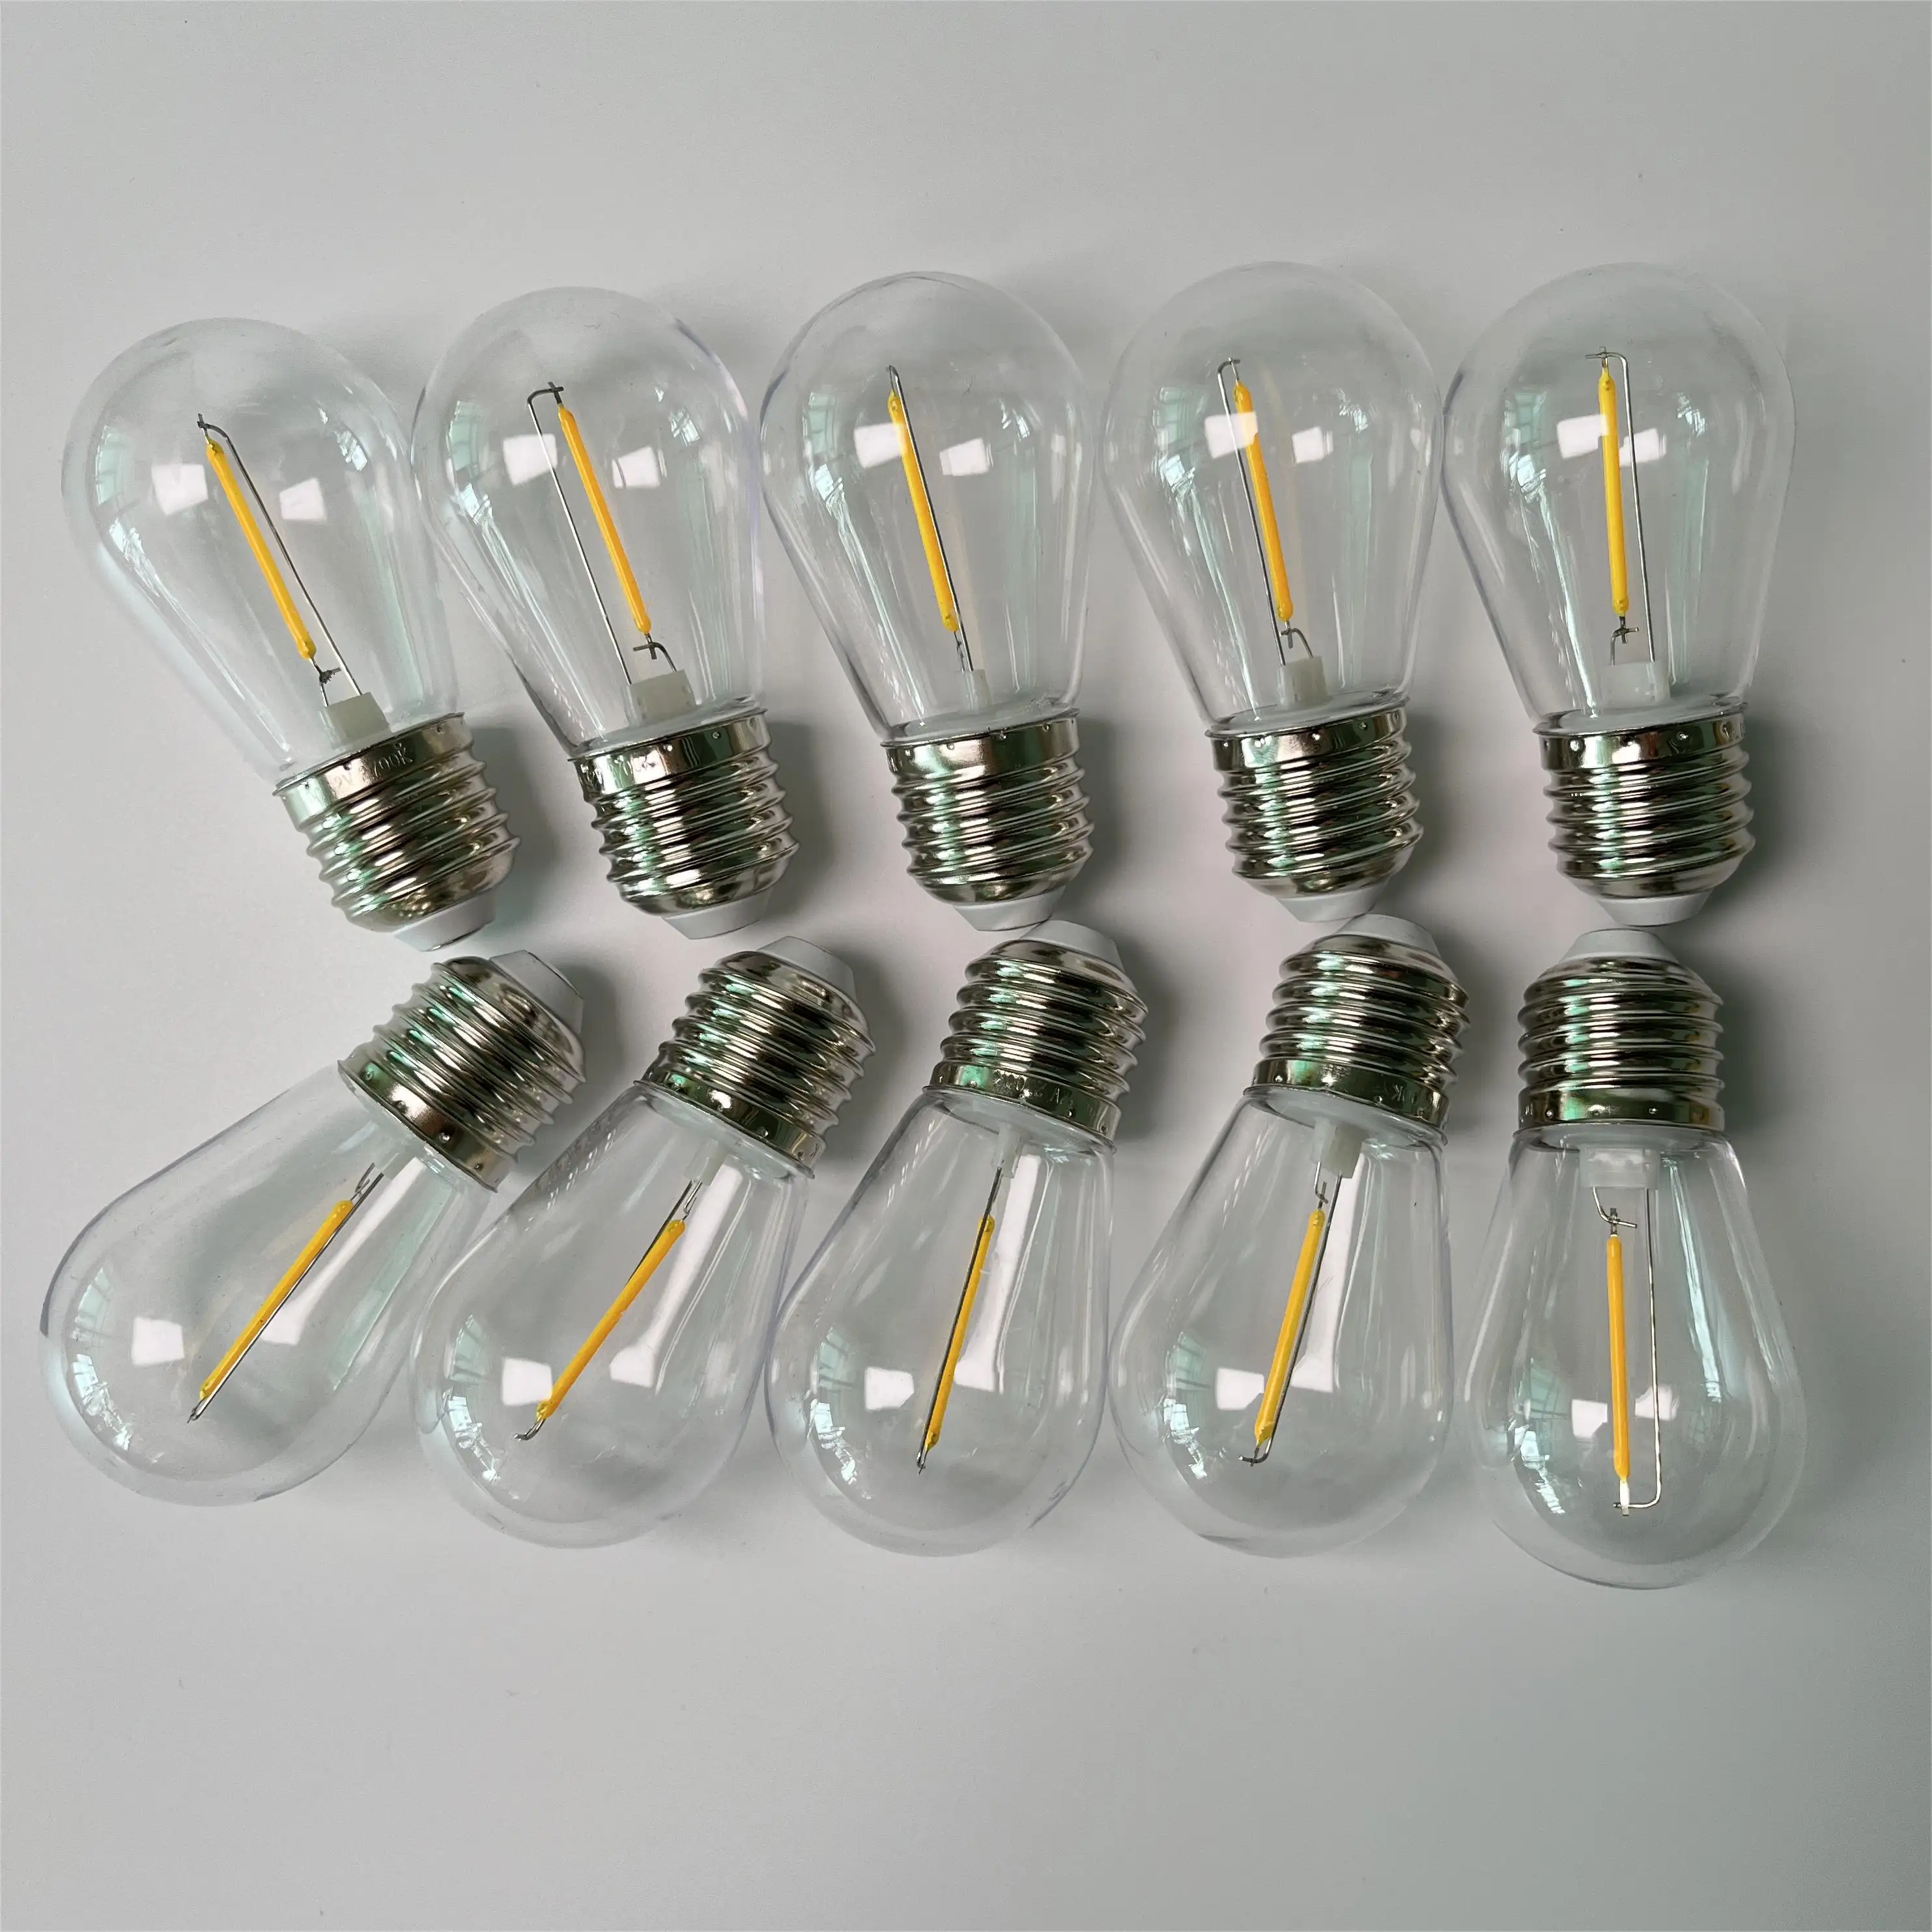 S14 LED-Glaslampen zusätzliche Lampen austauschbare Glühbirnen für den Außenbereich LED-String-Leuchten Festlampen